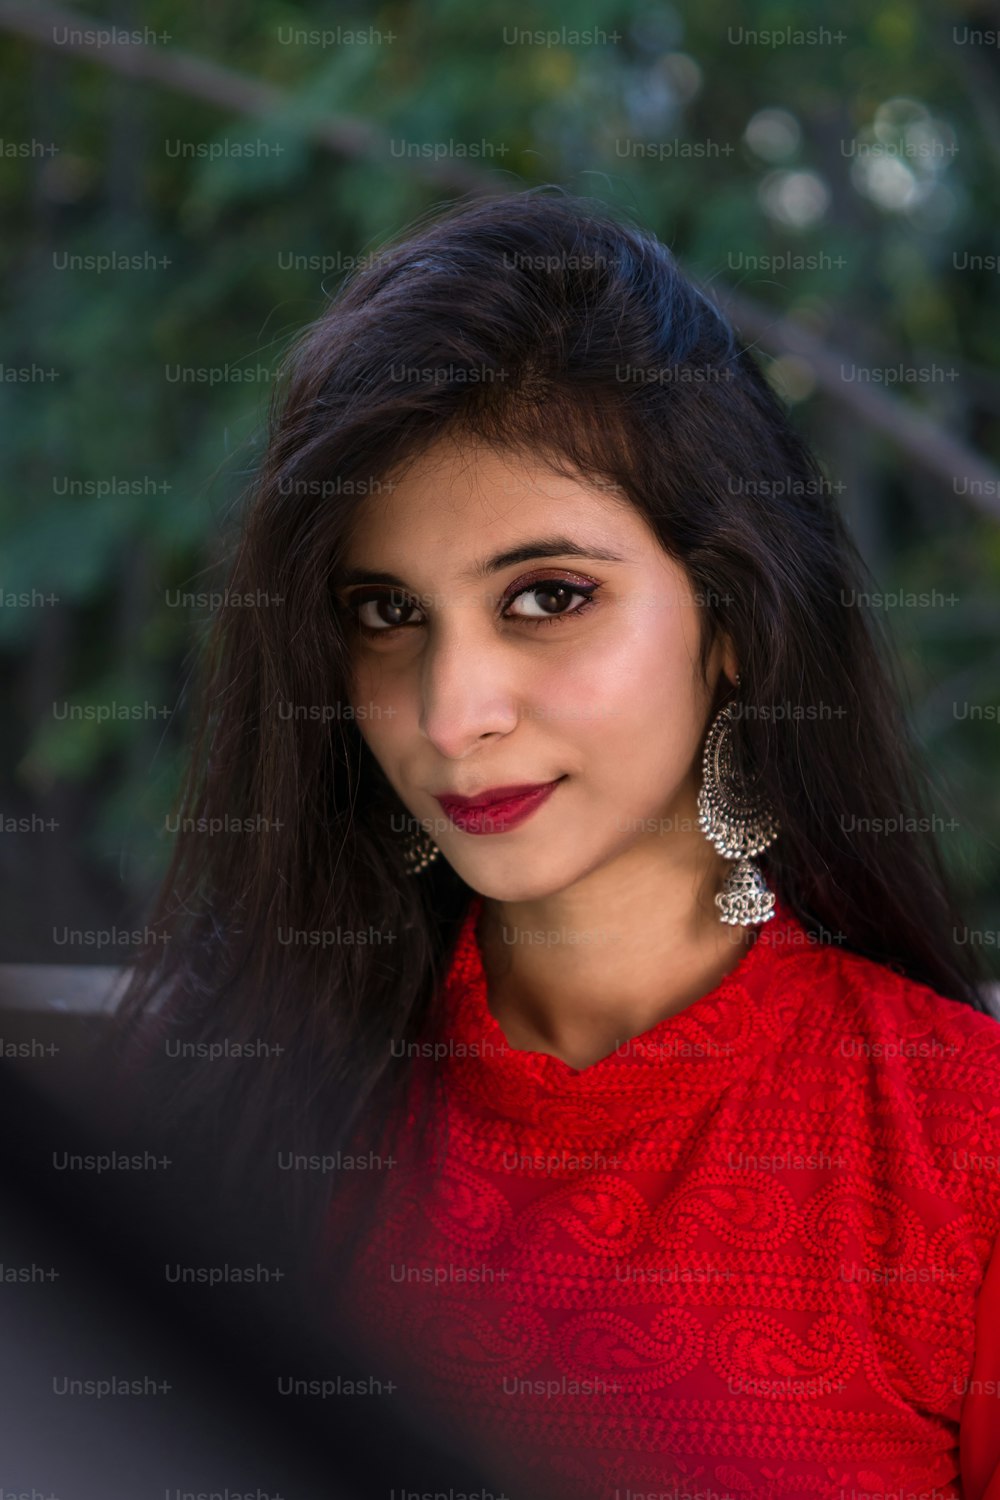 Belle fille indienne. Jeune femme modèle hindoue. Costume rouge traditionnel indien